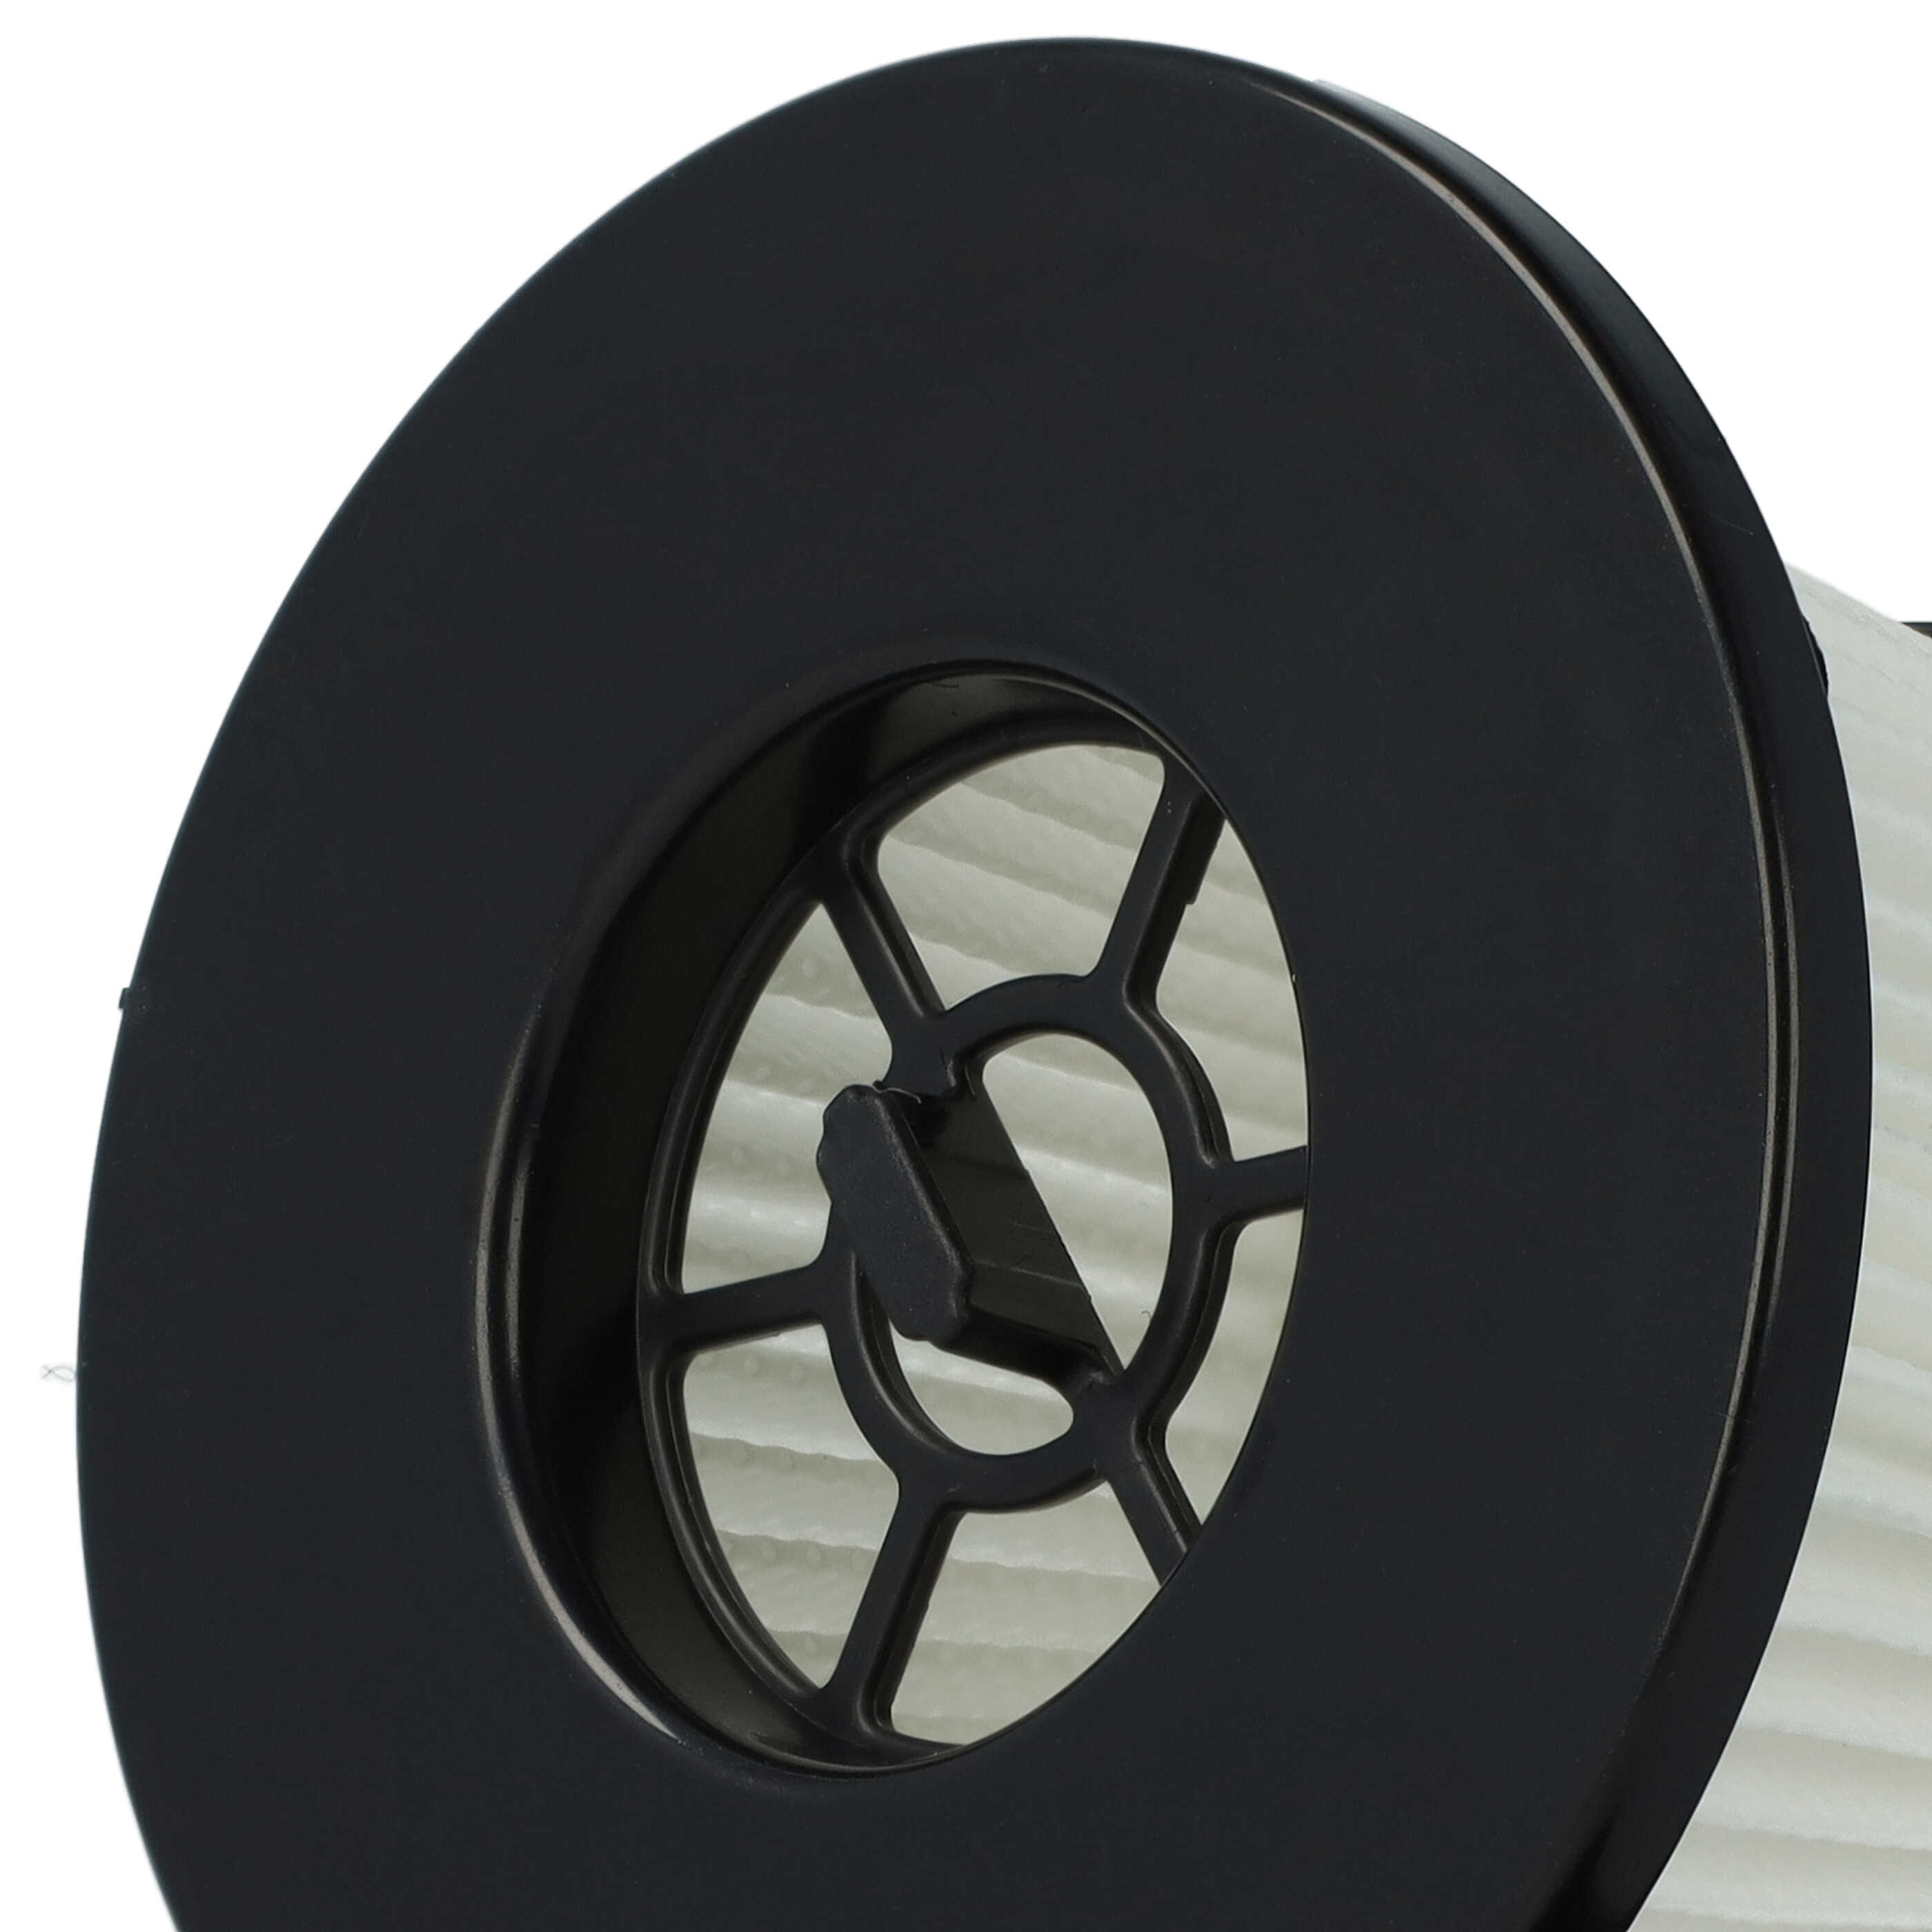 2x Filtro per aspirapolvere Moosoo K24 - filtro HEPA, nero / bianco